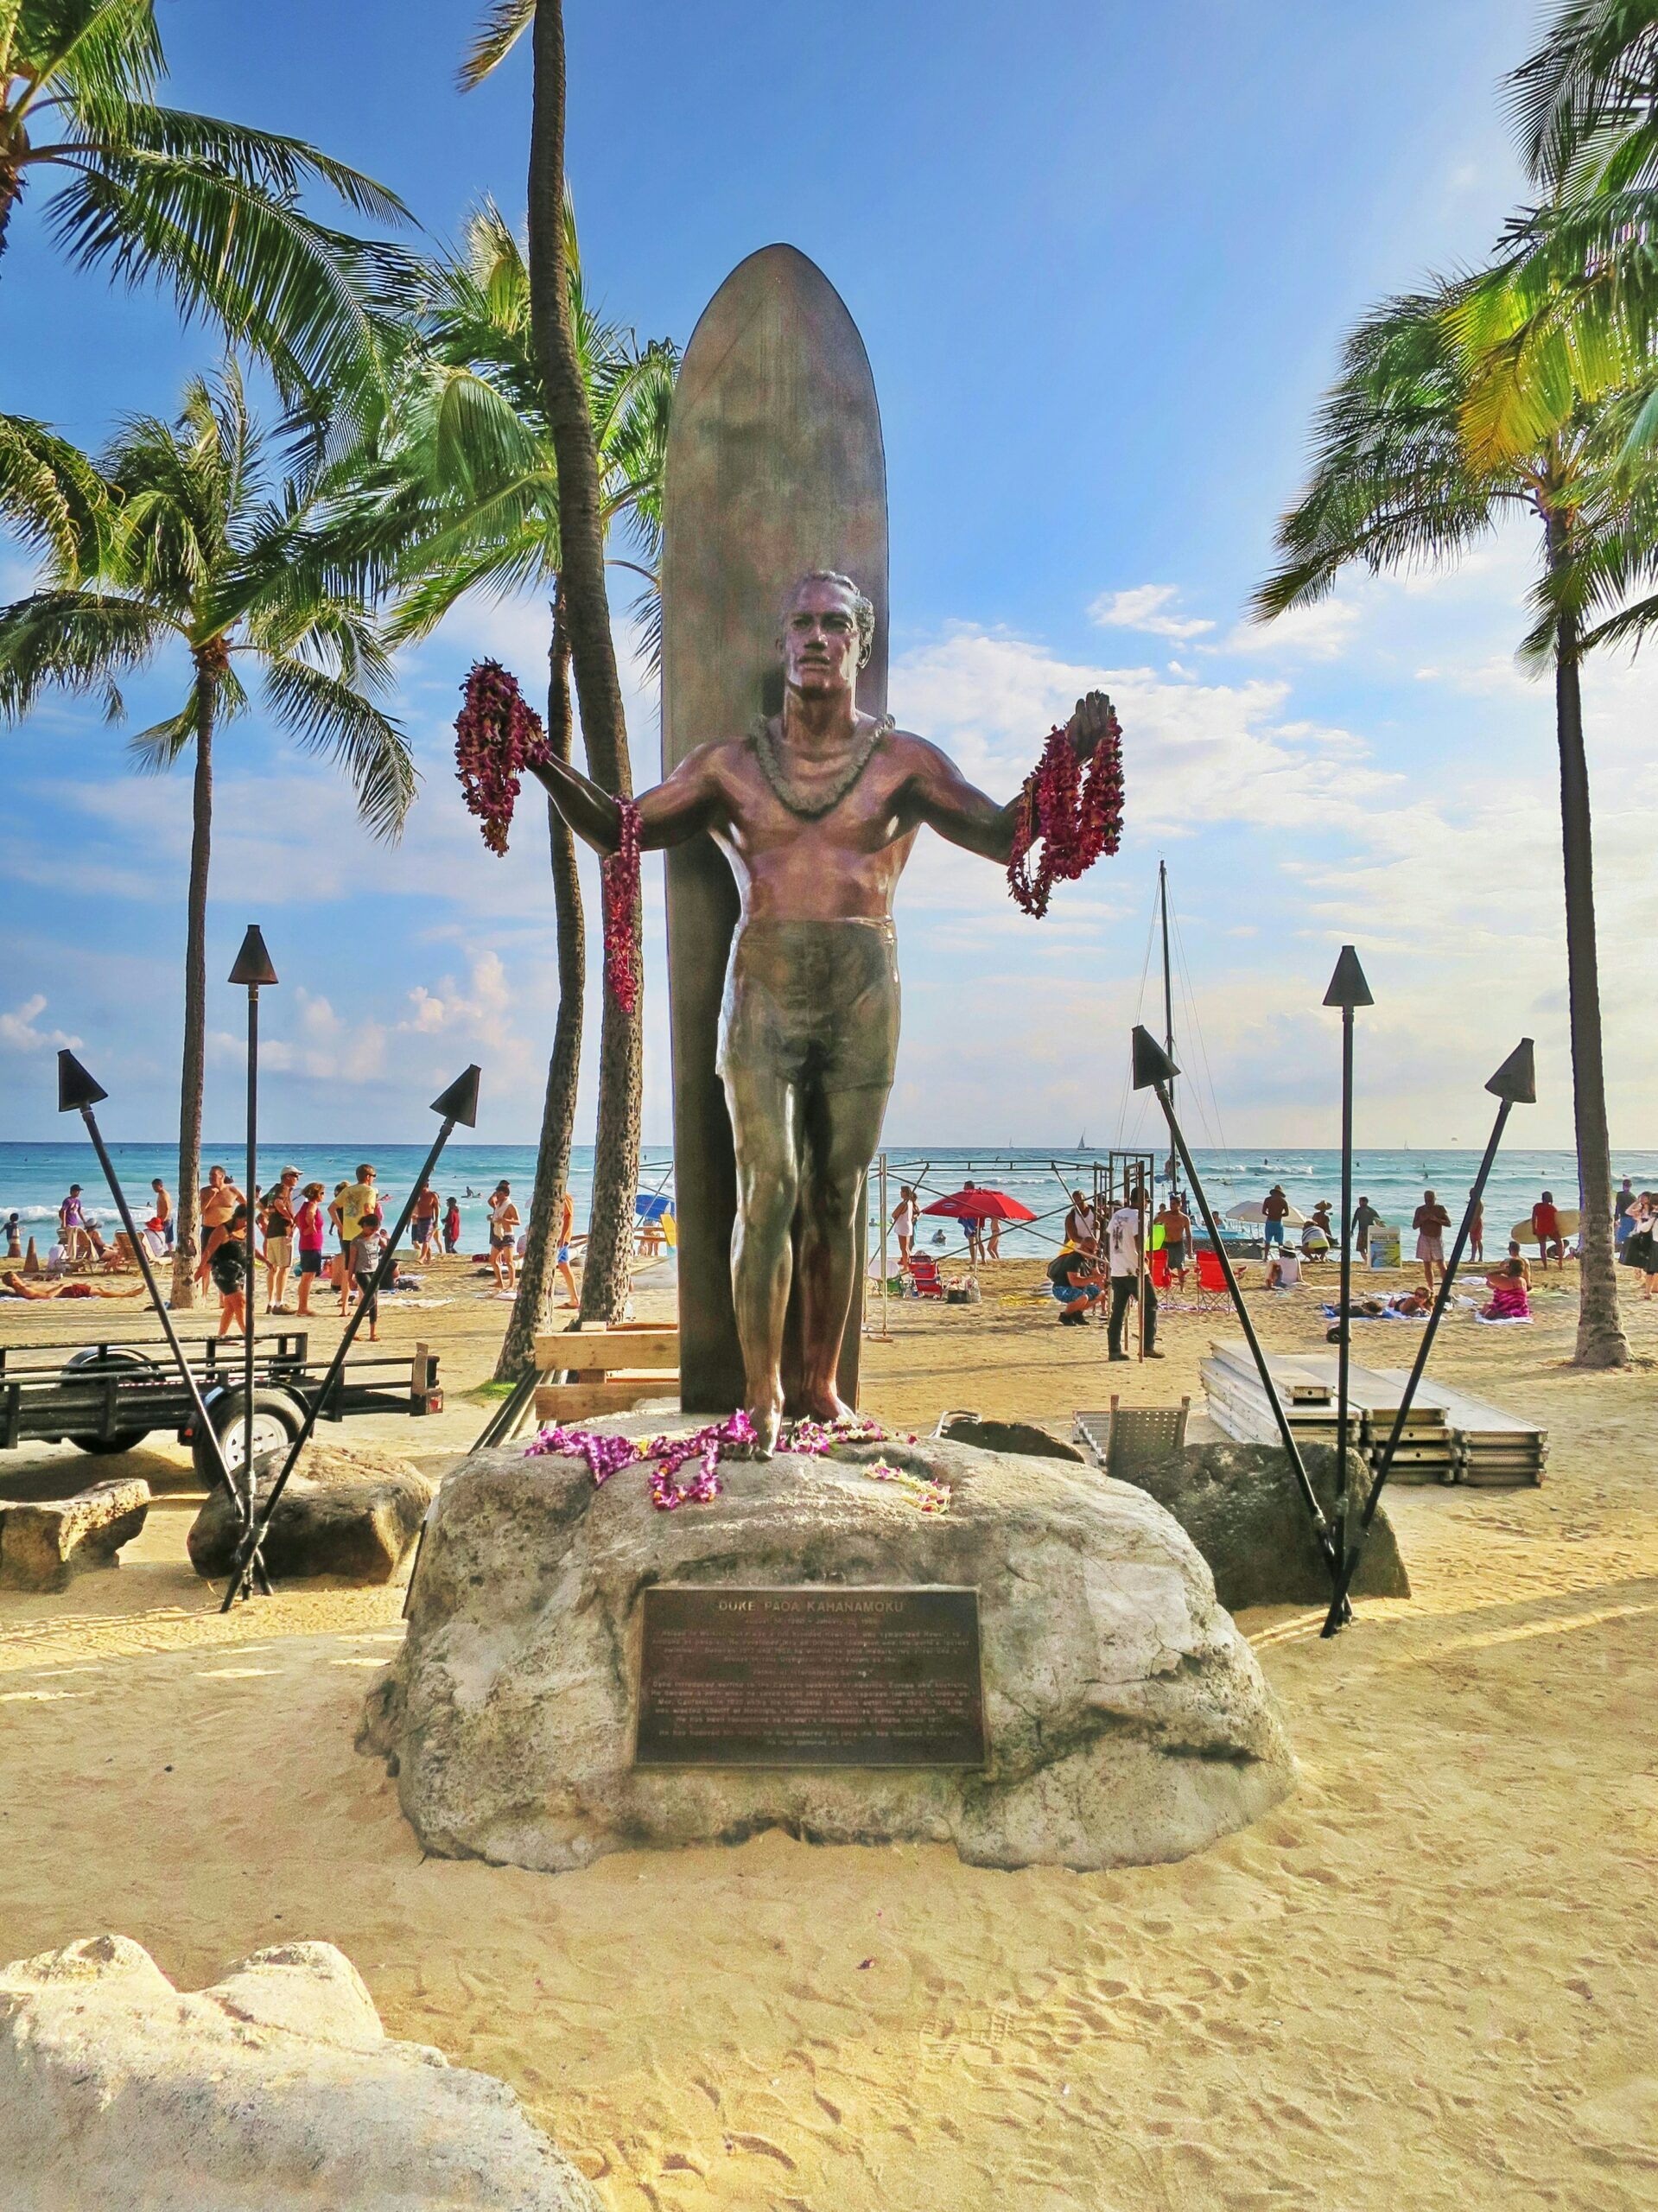 Statue of Duke Kahanamoku on Kuhio Beach in Waikiki.